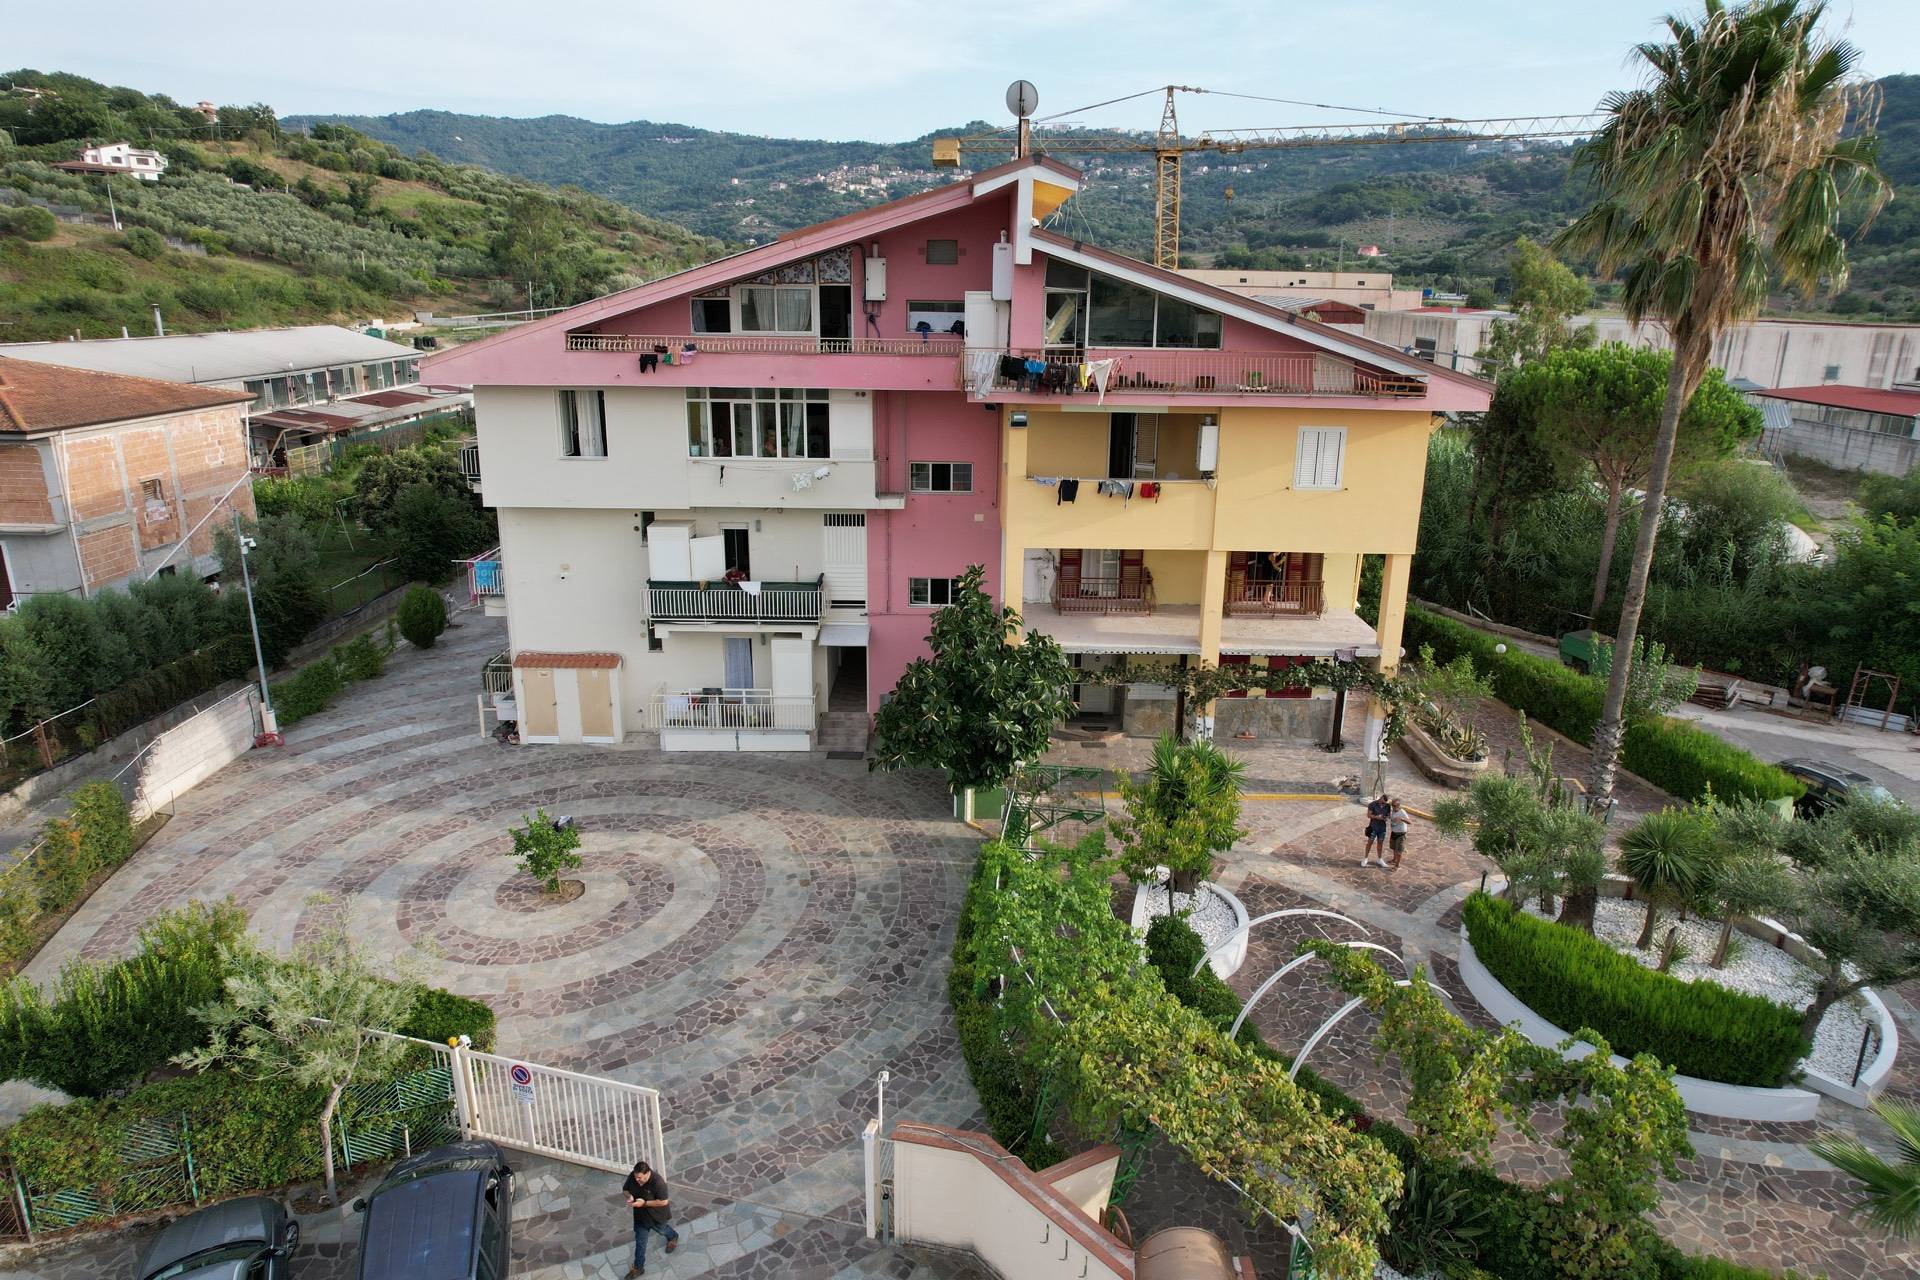 Appartamento in vendita a Agropoli, 2 locali, prezzo € 65.000 | CambioCasa.it